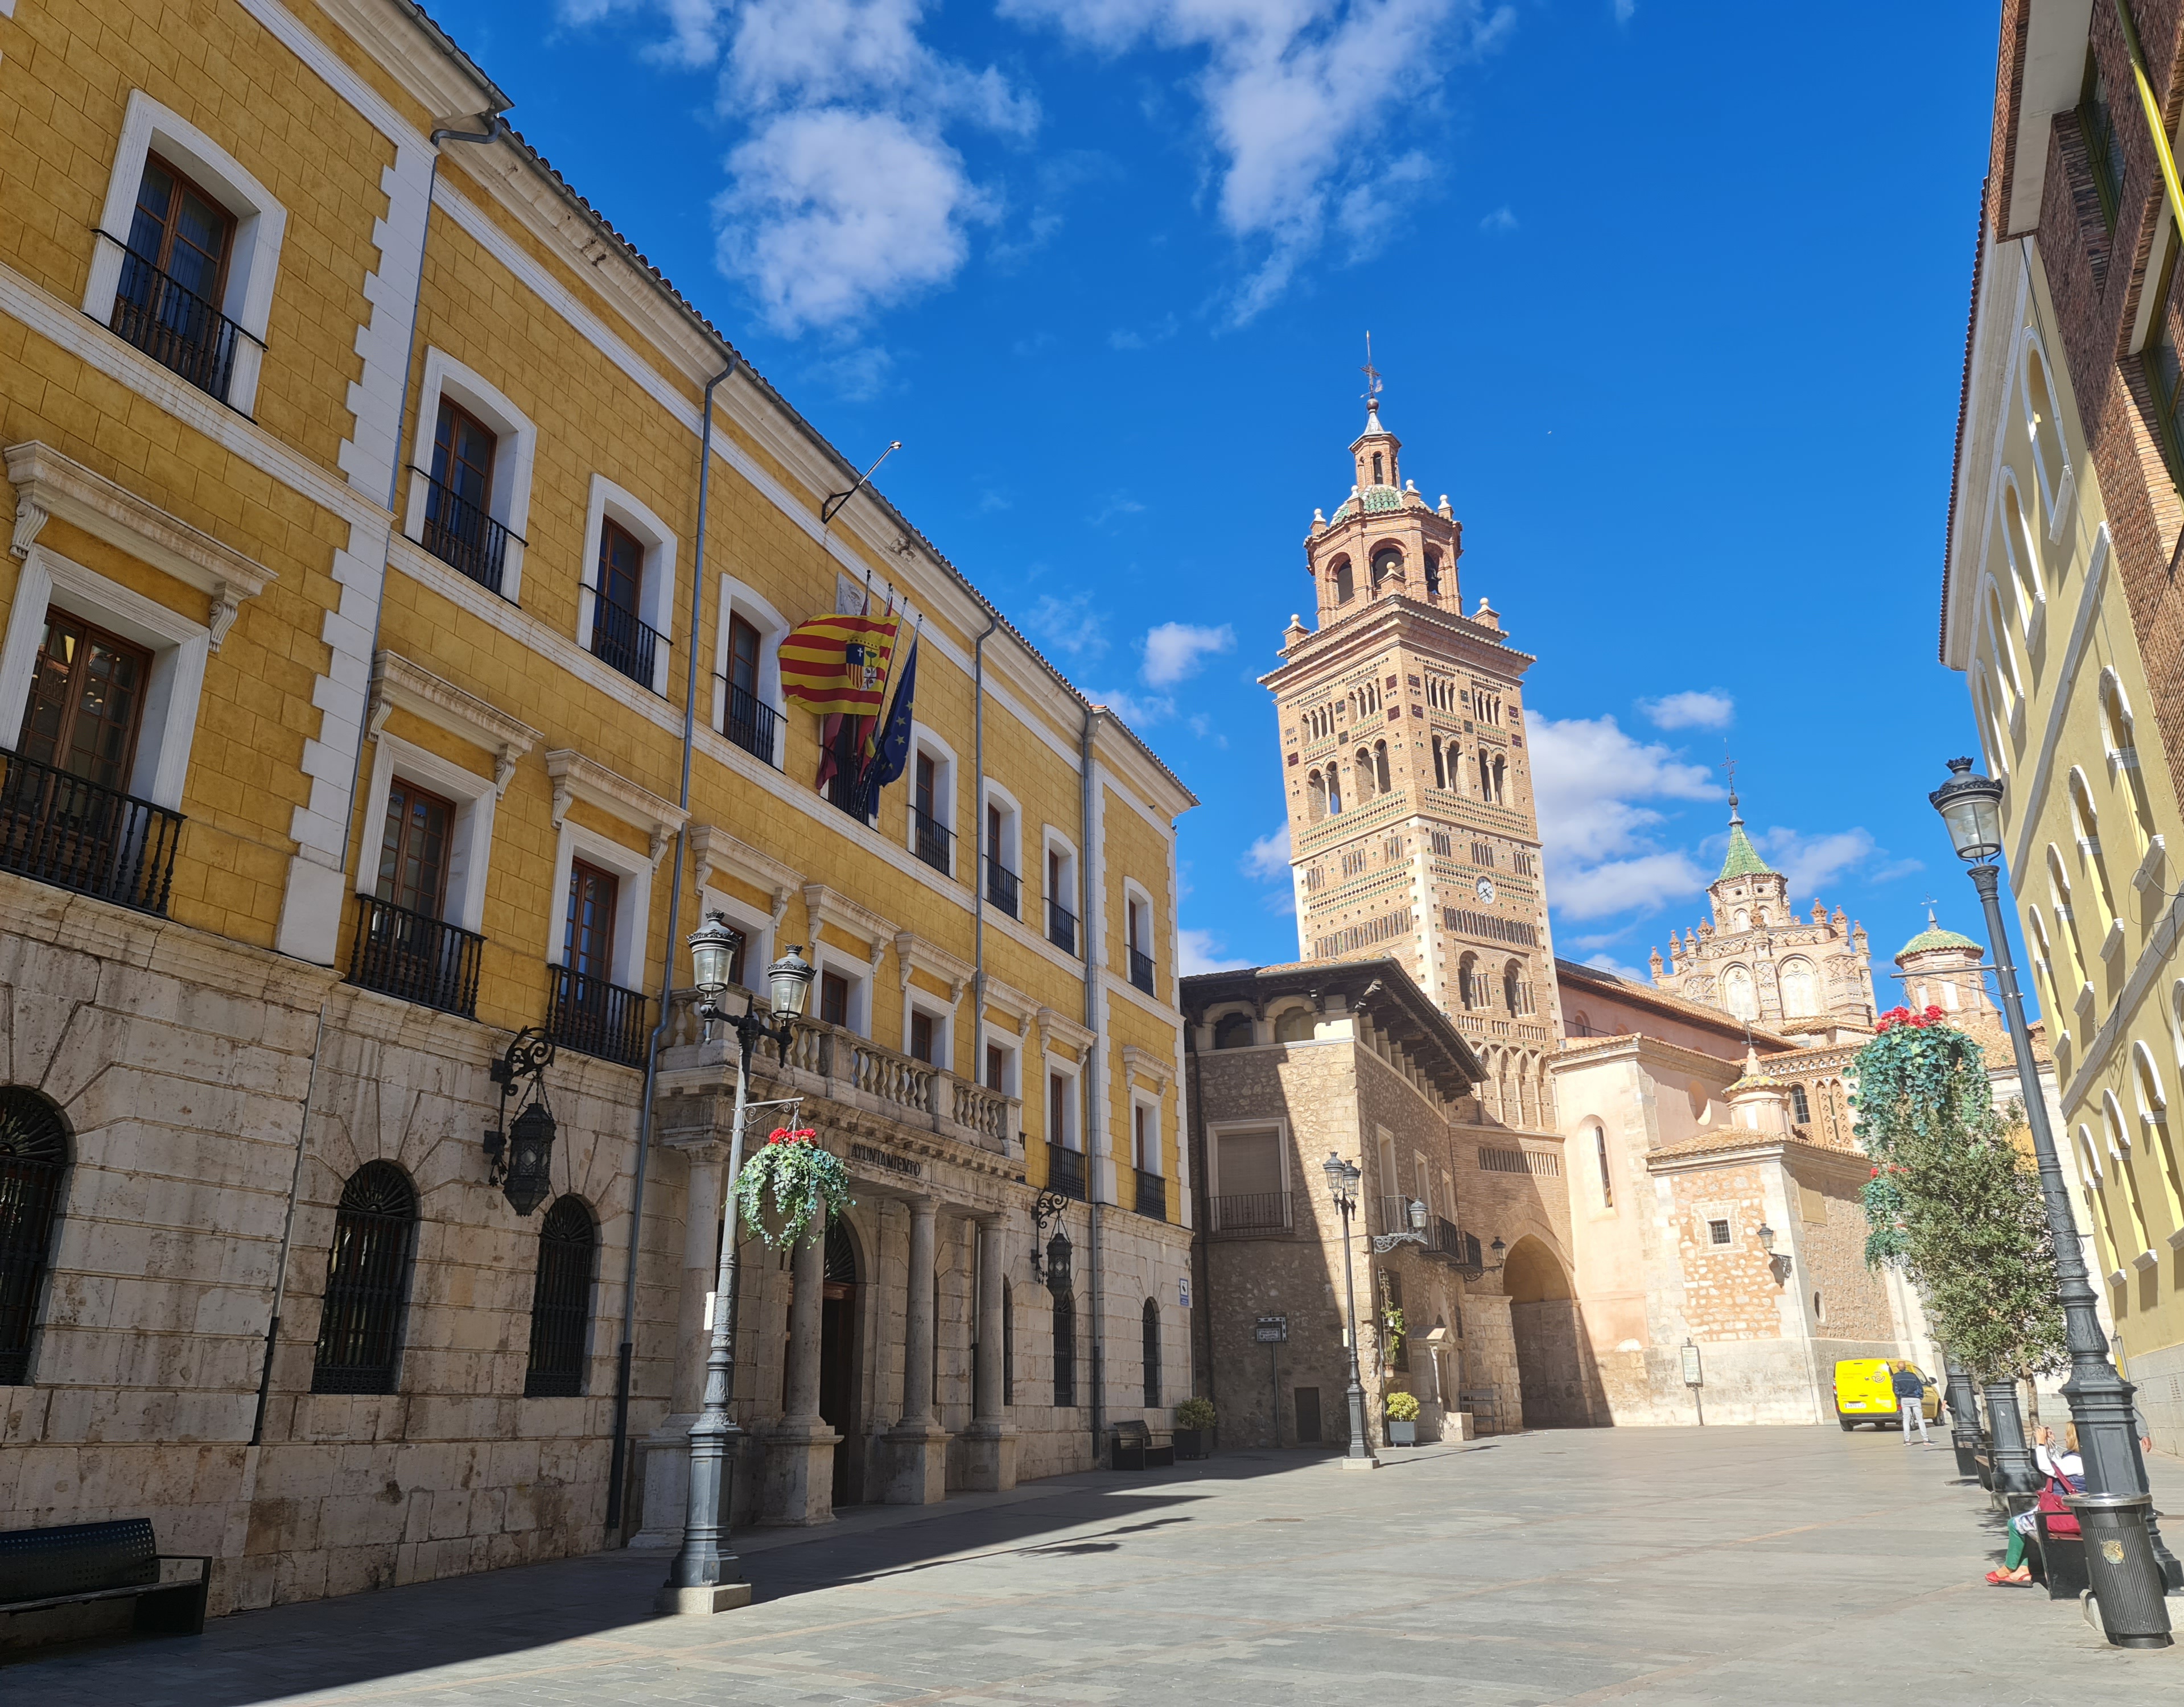 El Ayuntamiento de Teruel ultima el Plan Especial de ProtecciÃ³n del Conjunto HistÃ³rico y los catÃ¡logos de bienes de interÃ©s cultural, arqueolÃ³gico y paleontolÃ³gico que se incluirÃ¡n en el nuevo PGOU